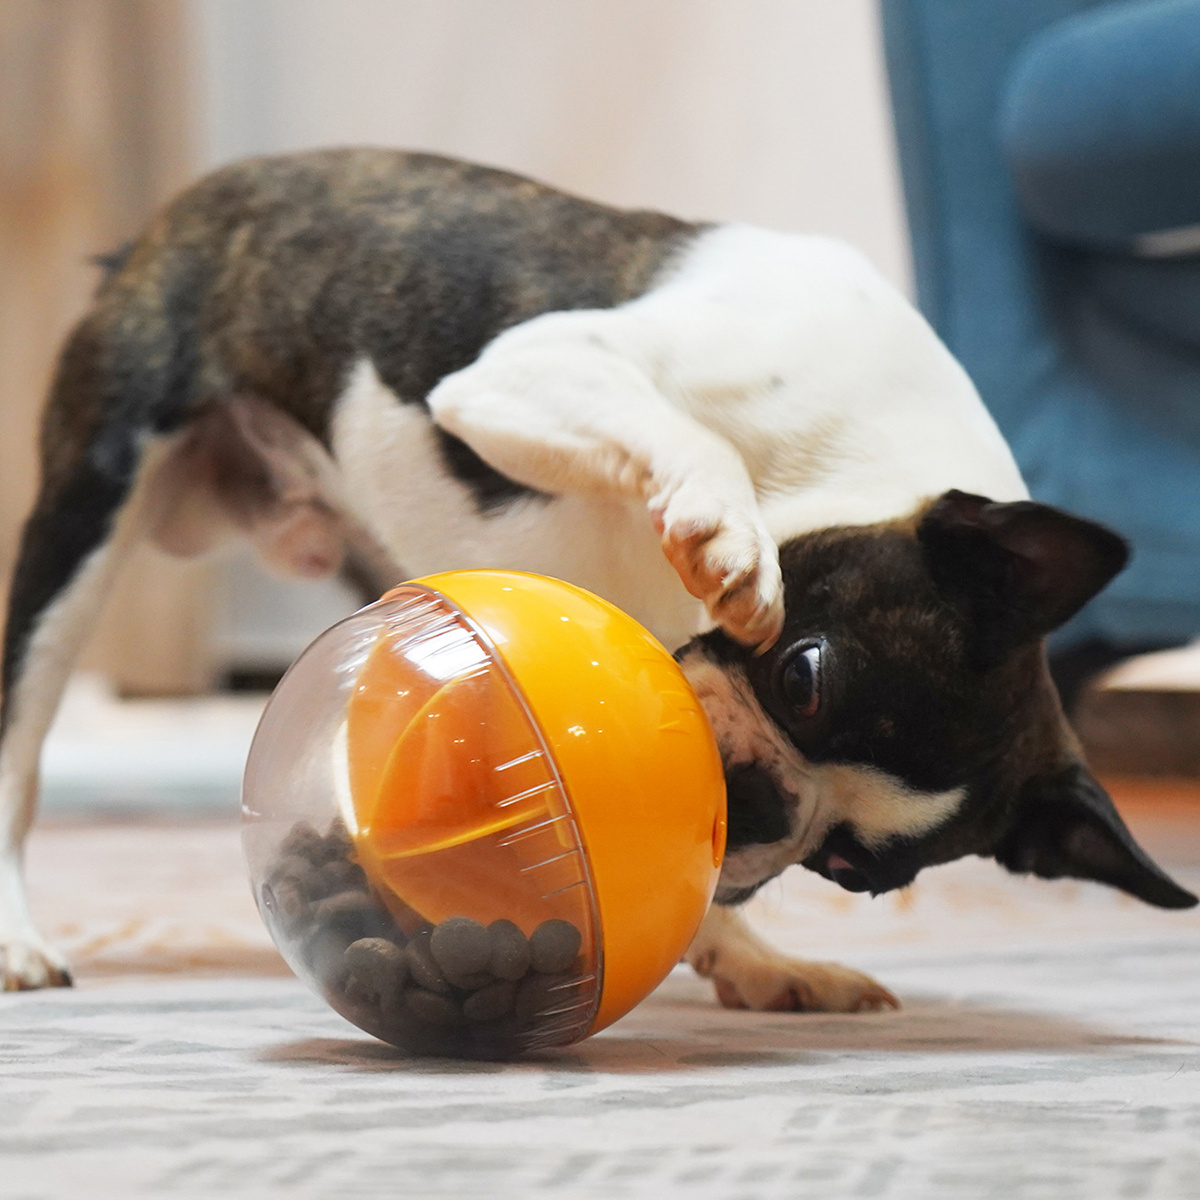 Pet Dog Treat Dispensing Toy, Food Leaking Toys, Dog Food Ball